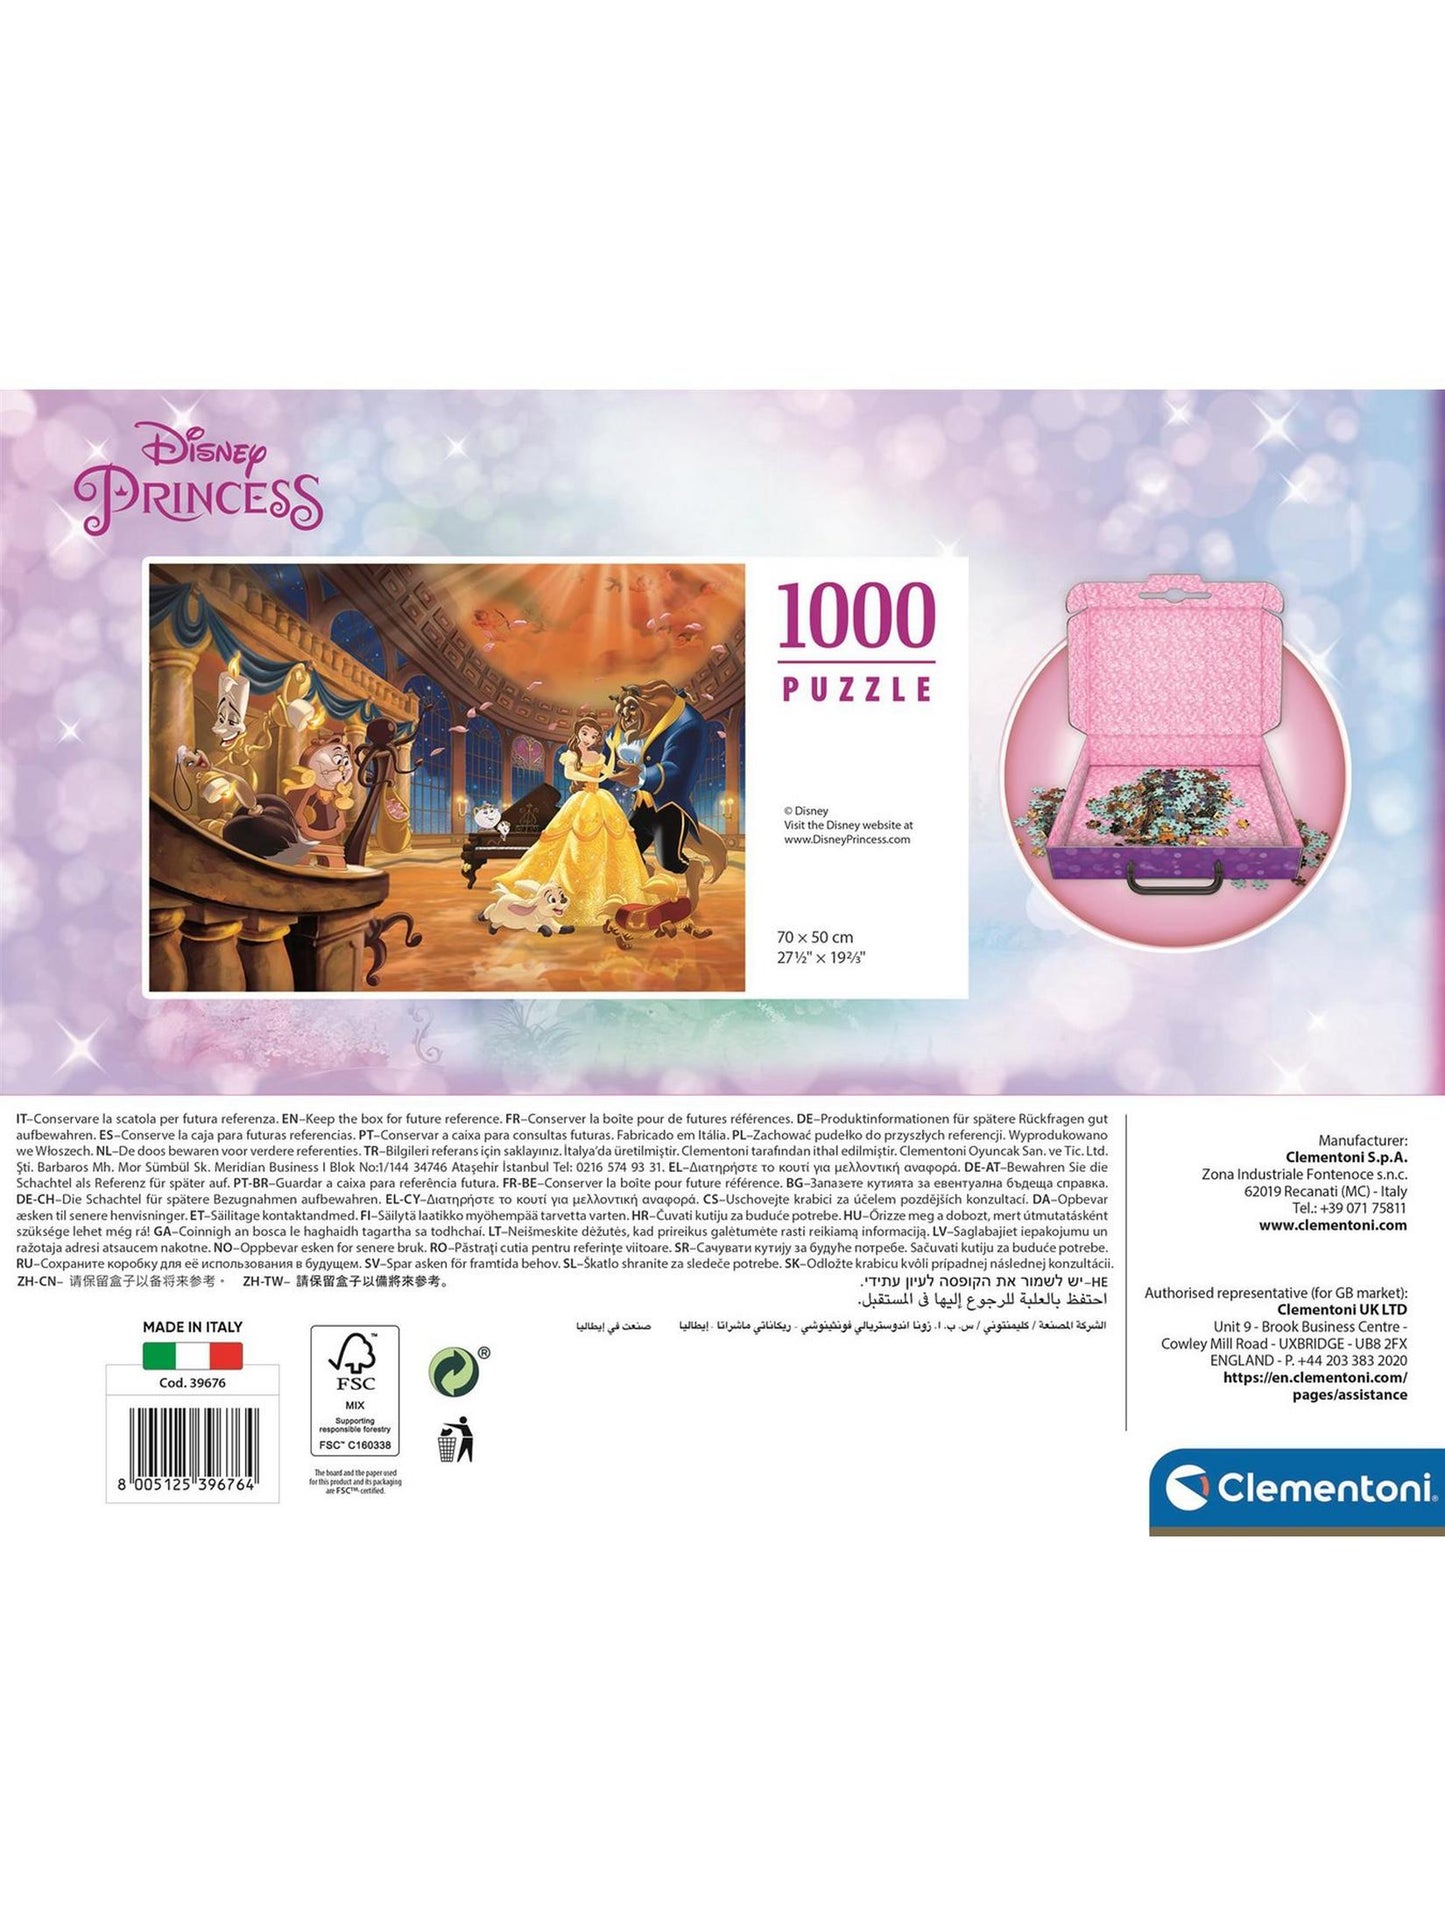 Clementoni Puzzle Briefcase Princess 1000 pcs